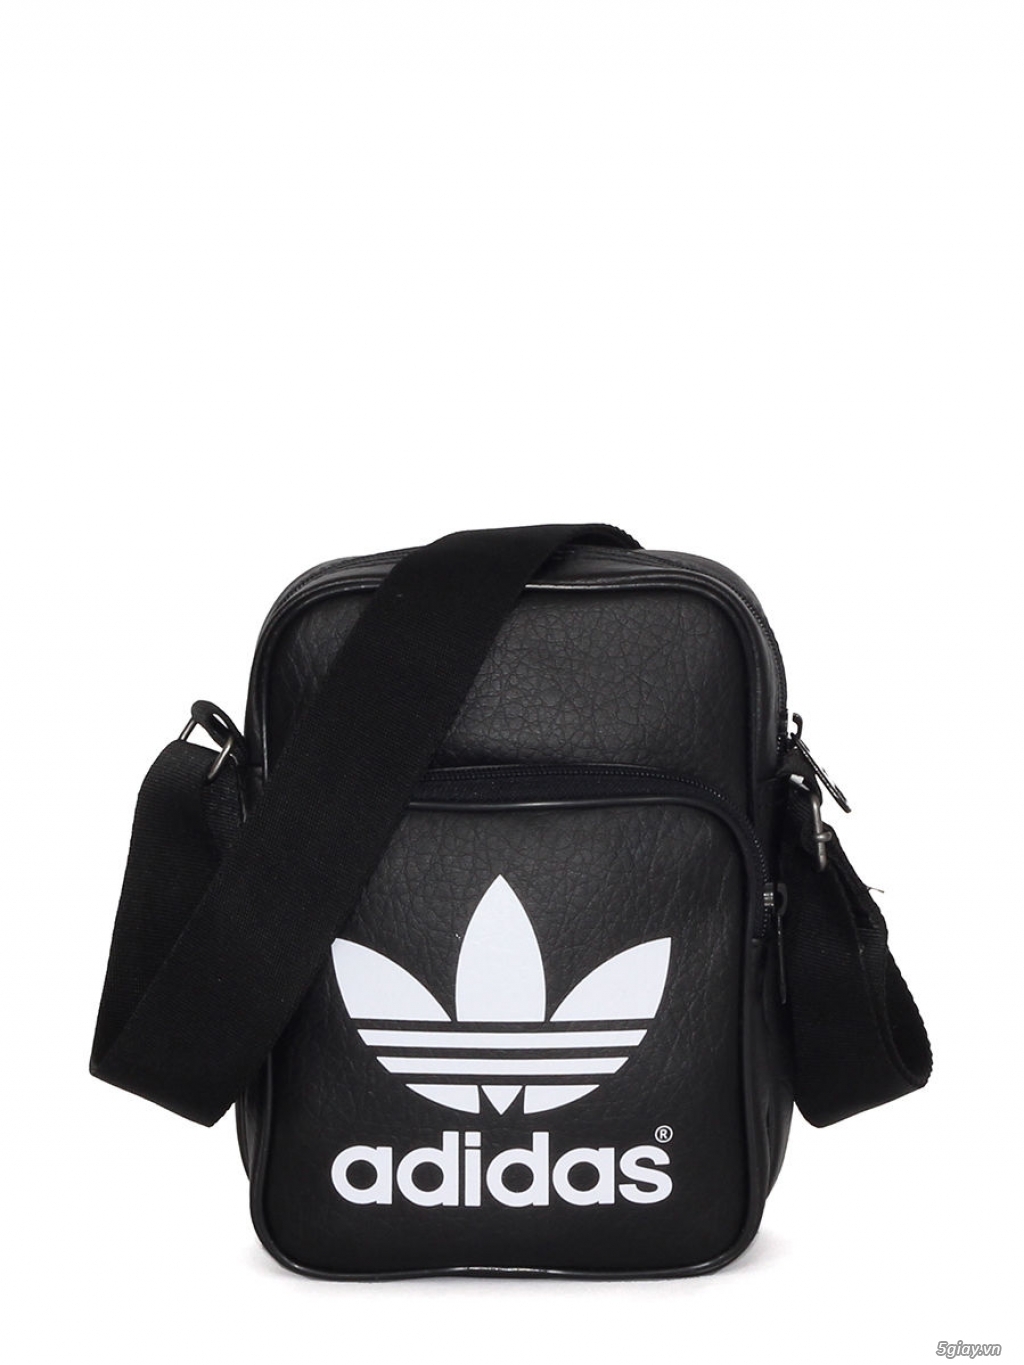 Túi đeo chéo Adidas Classic Mini Bag - 2